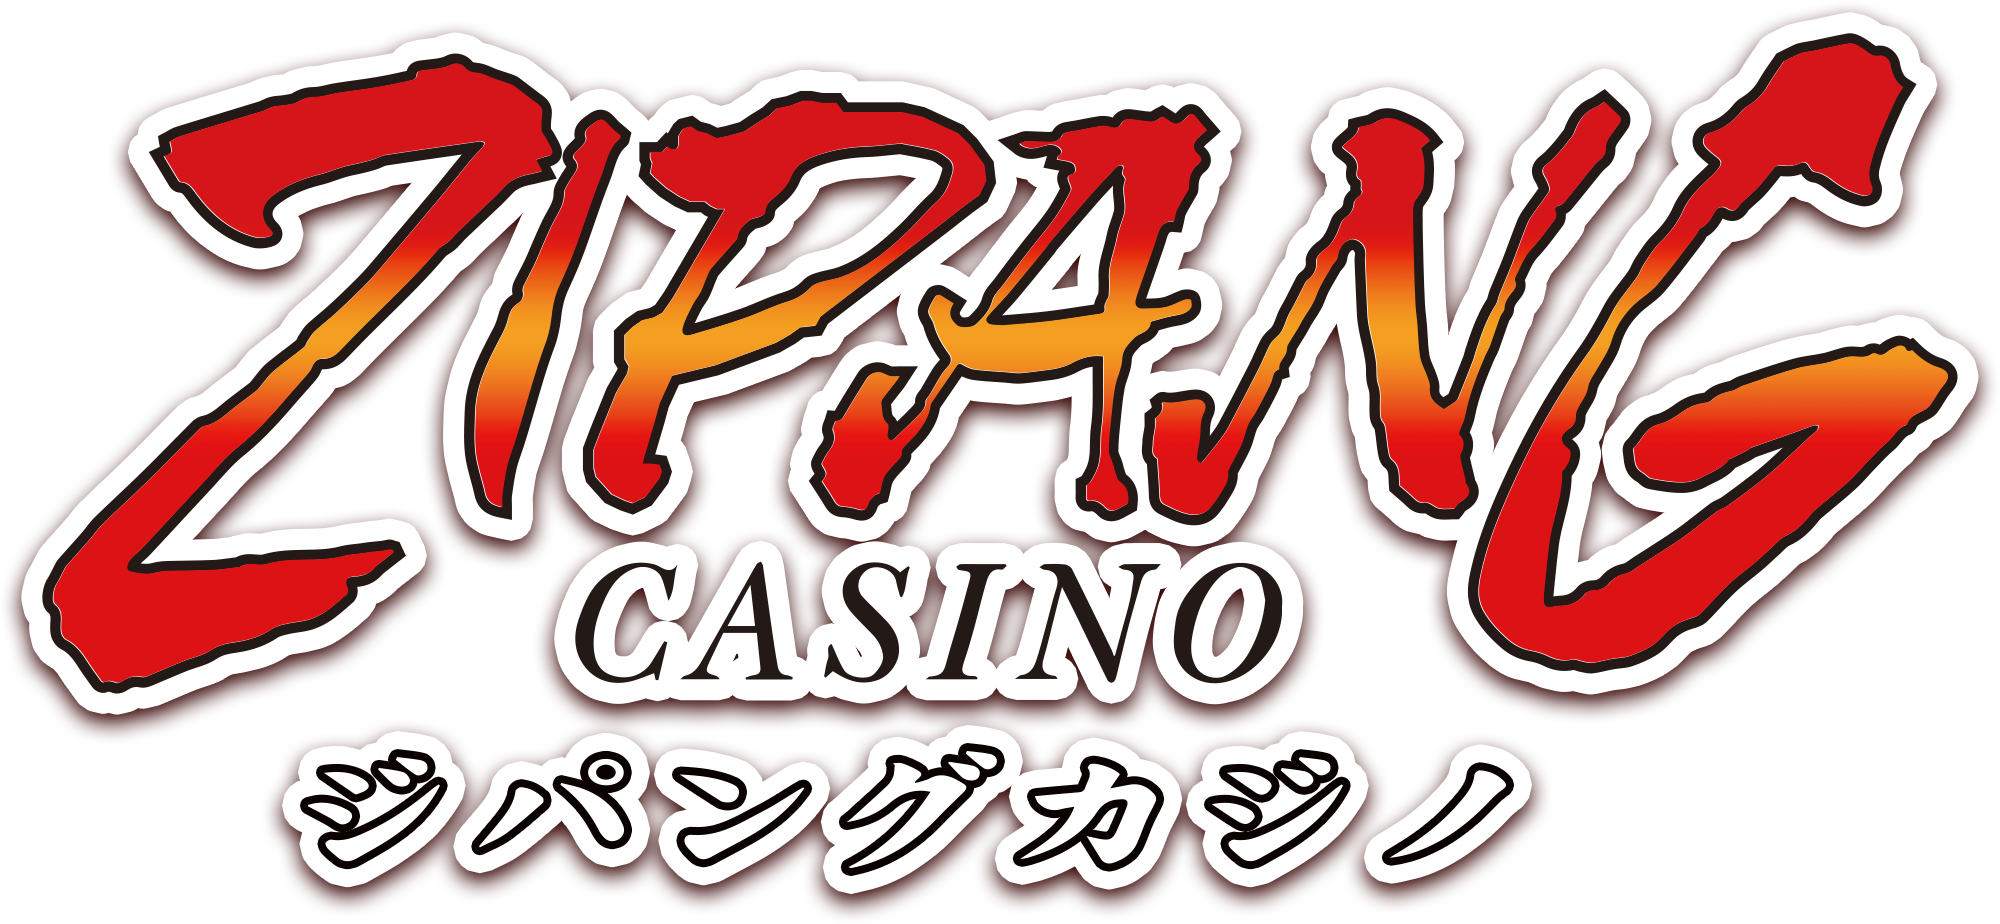 Zipang Casino Logo